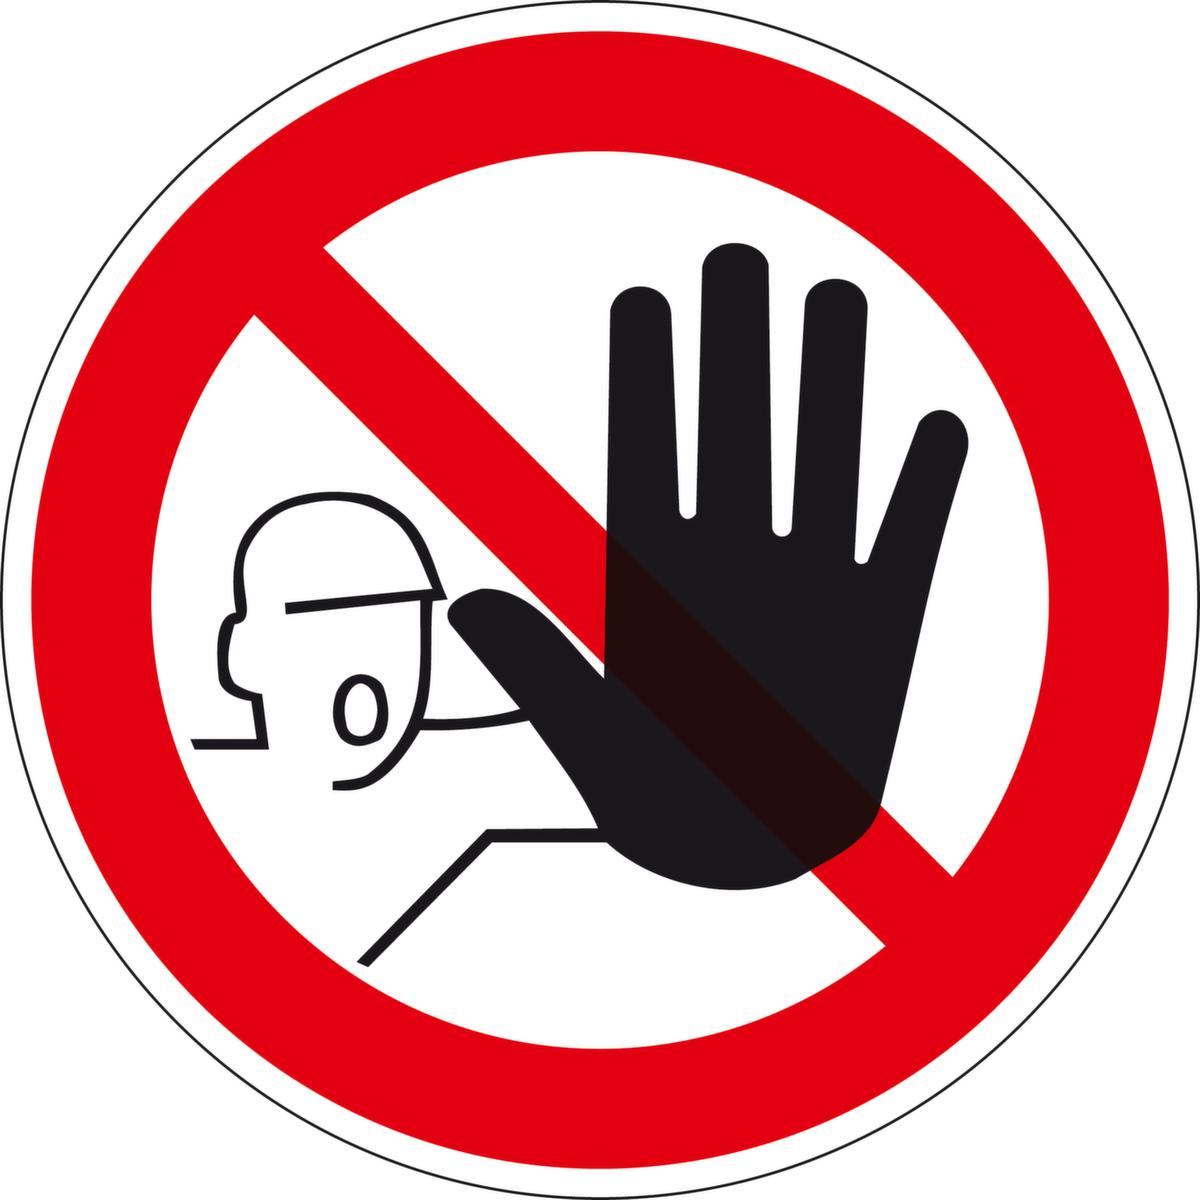 Verbotsschild Zutritt für Unbefugte verboten, Wandschild, Standard Standard 1 ZOOM